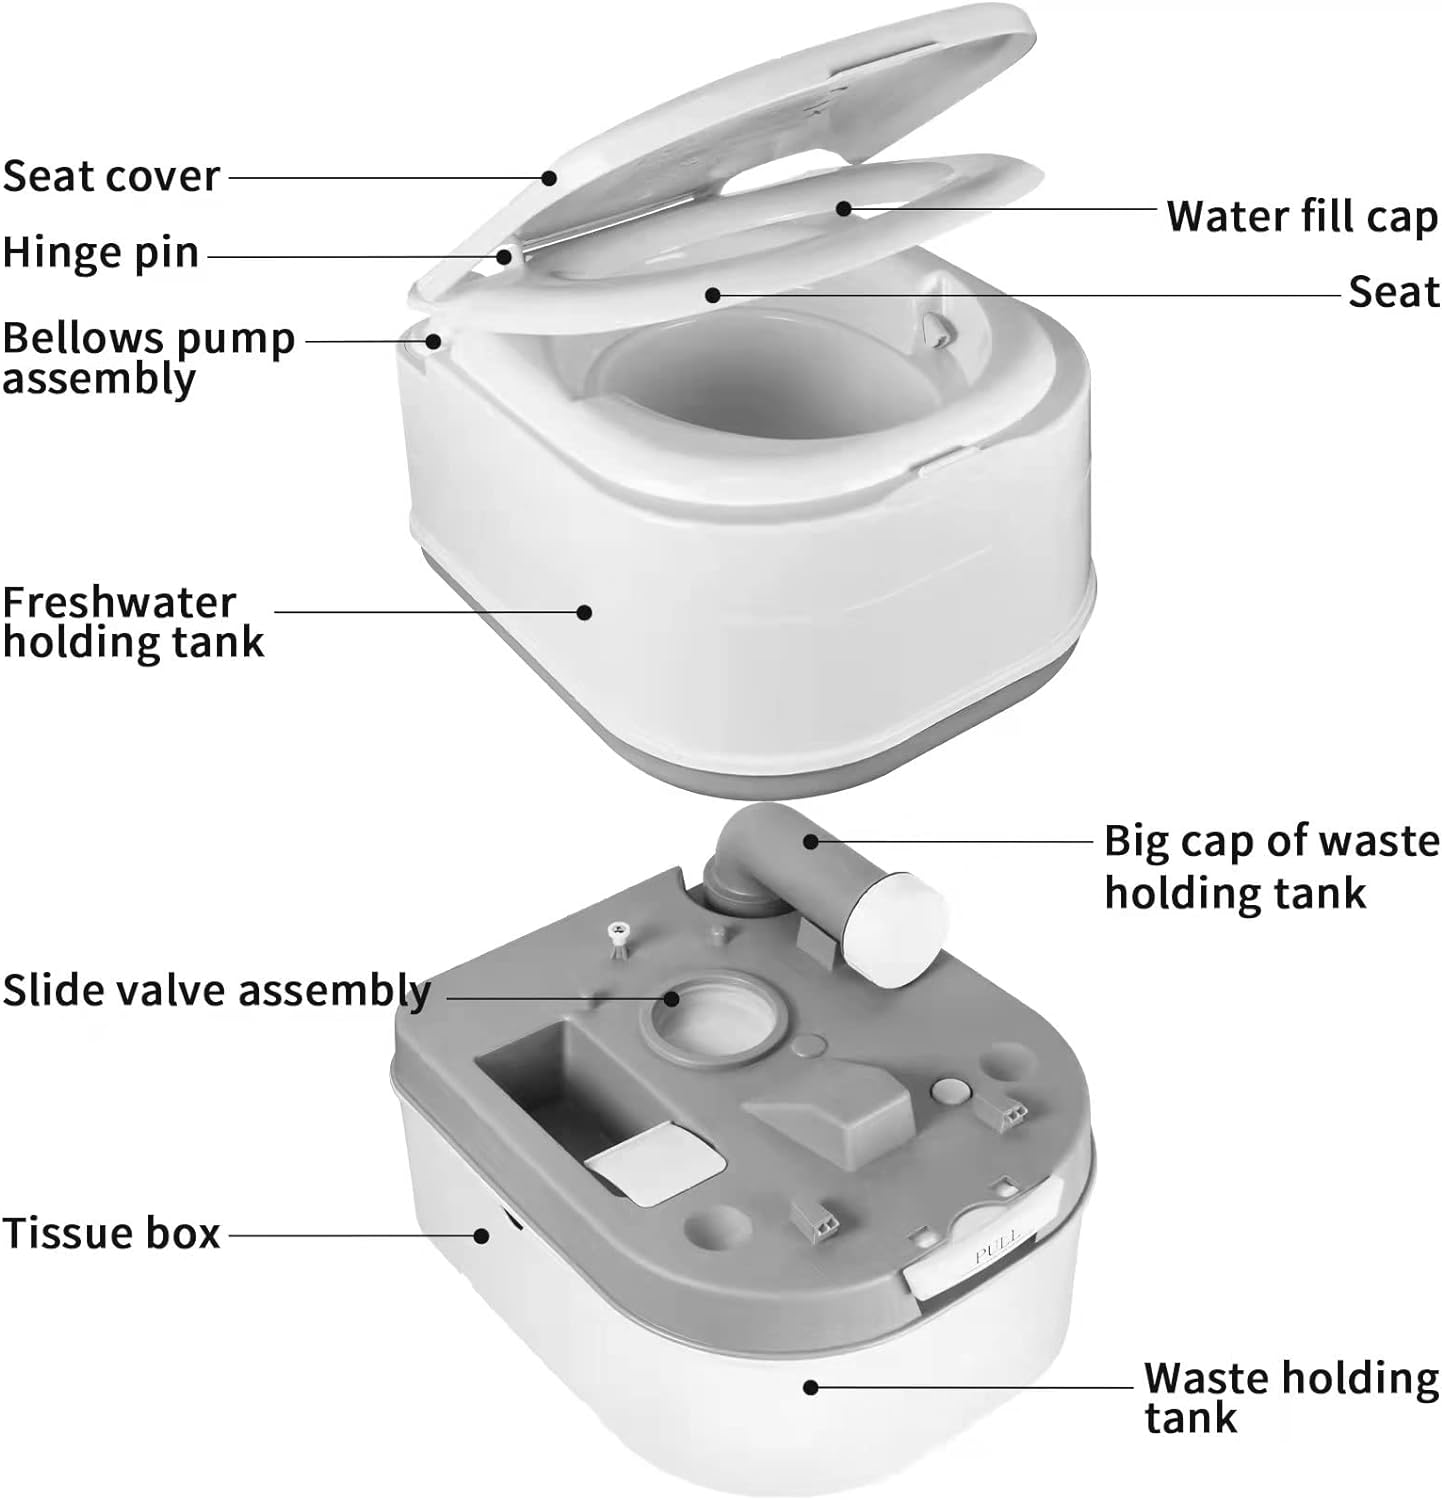 mupera portable cassette toilet review